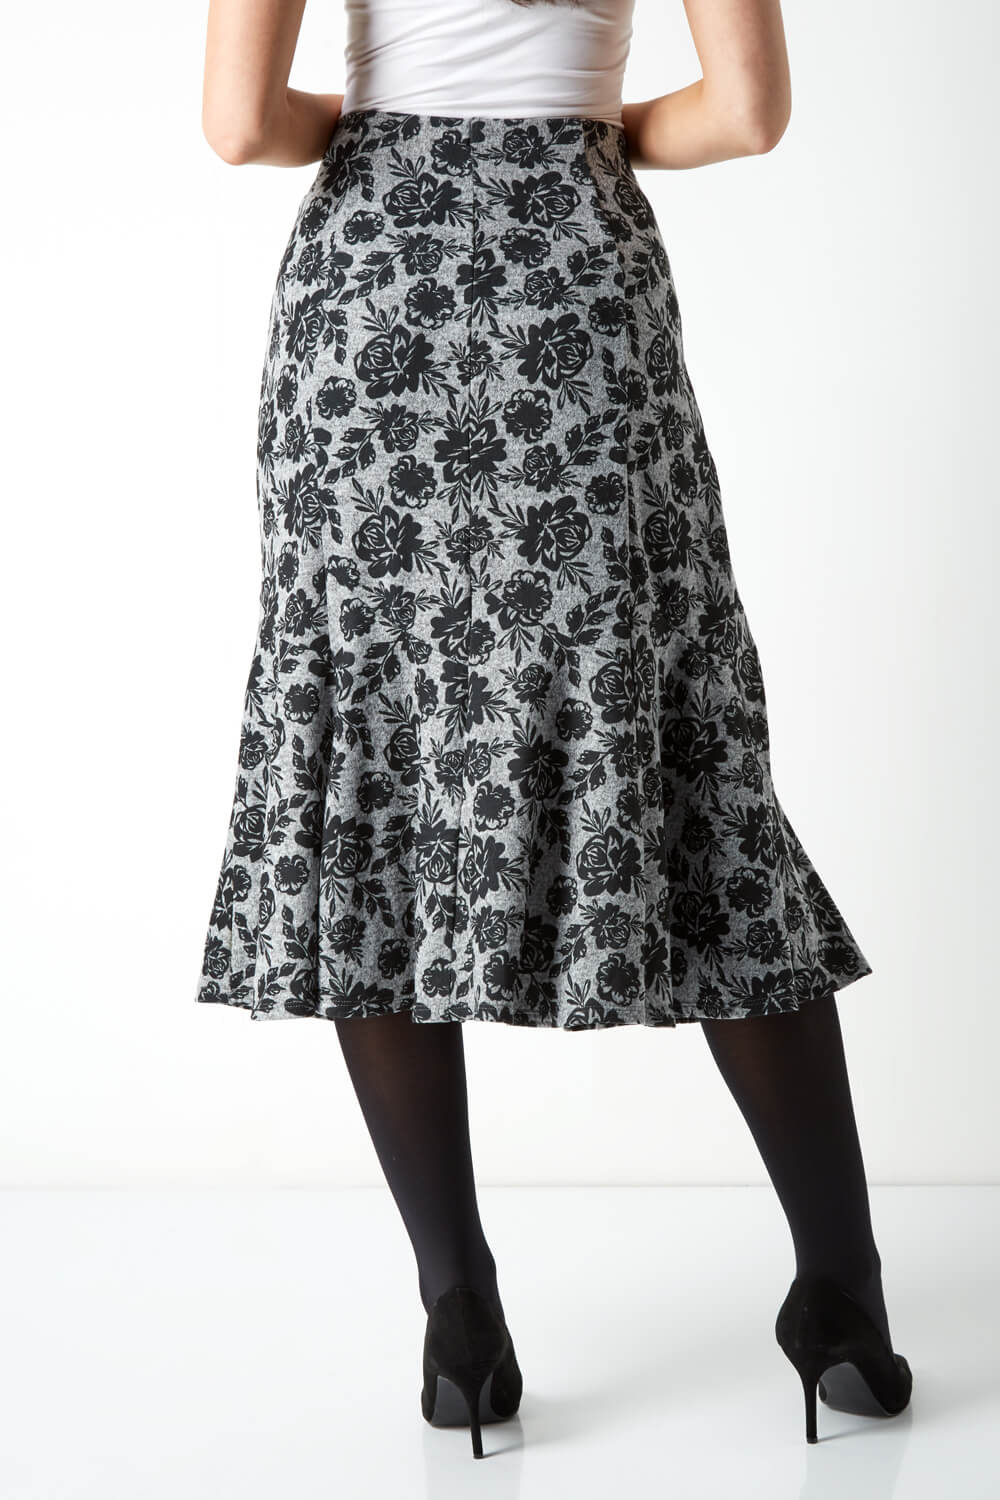 Grey Fluted Hem Floral Skirt, Image 2 of 4